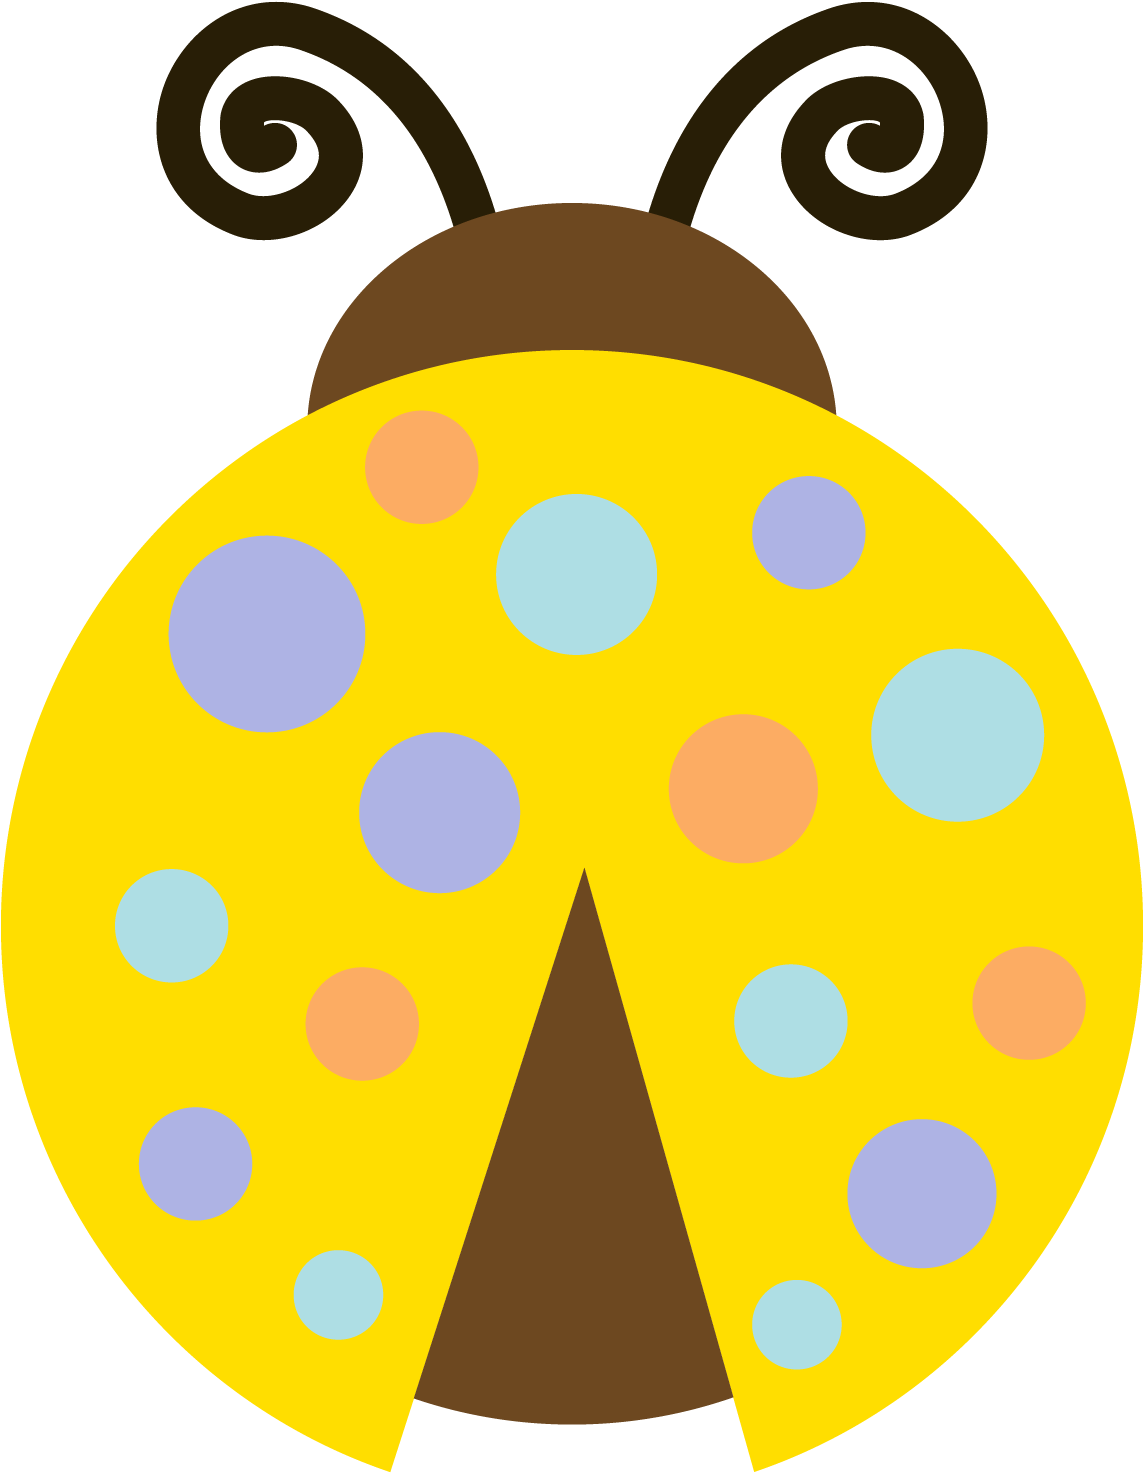 Ladybug - Mariquita Blanco Y Negro (1500x1500)